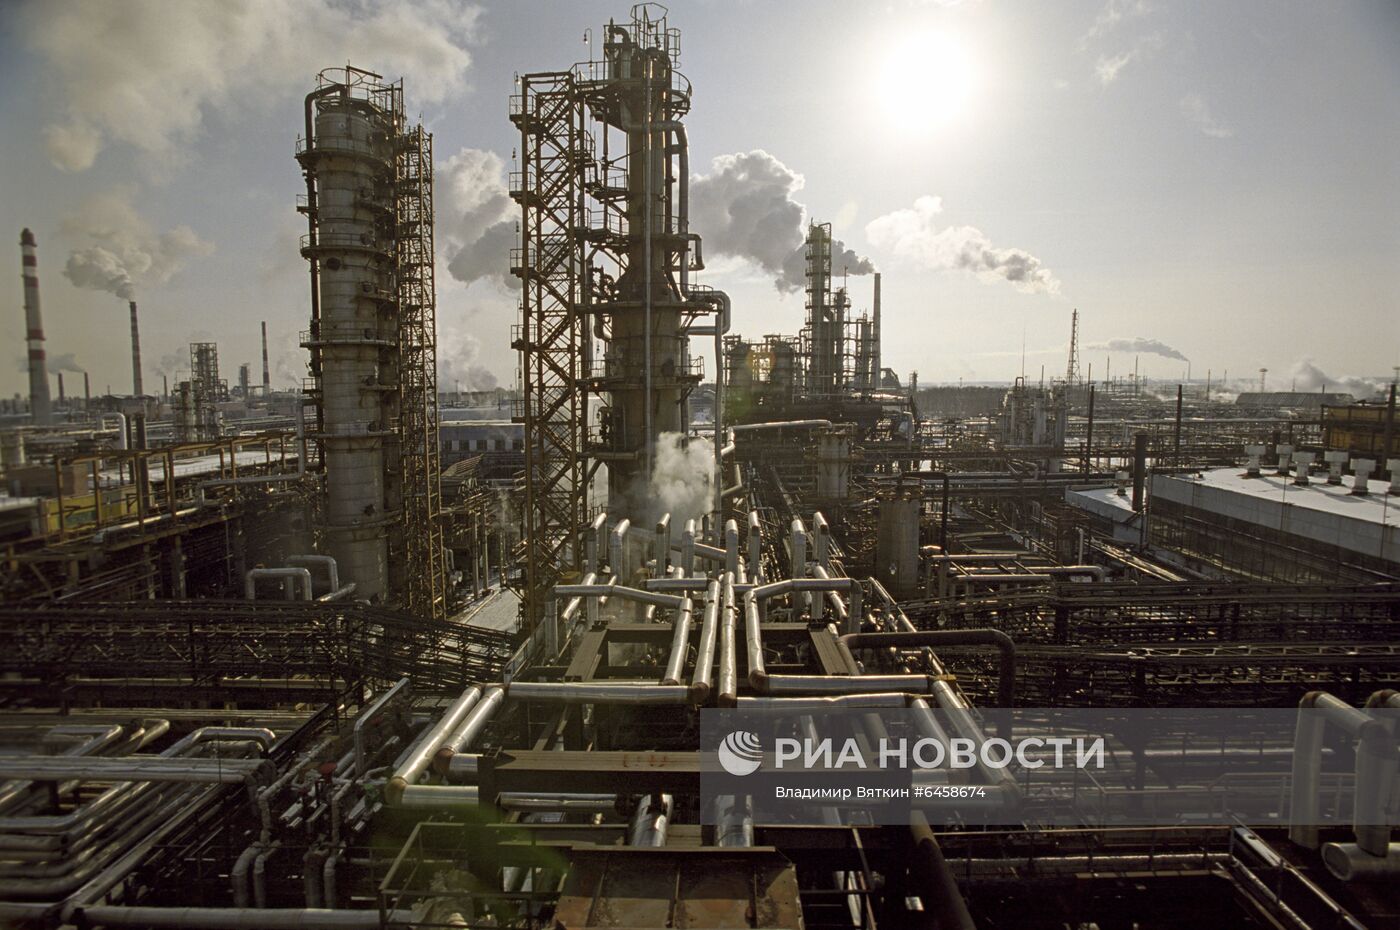 "Сибирская нефтяная компания"